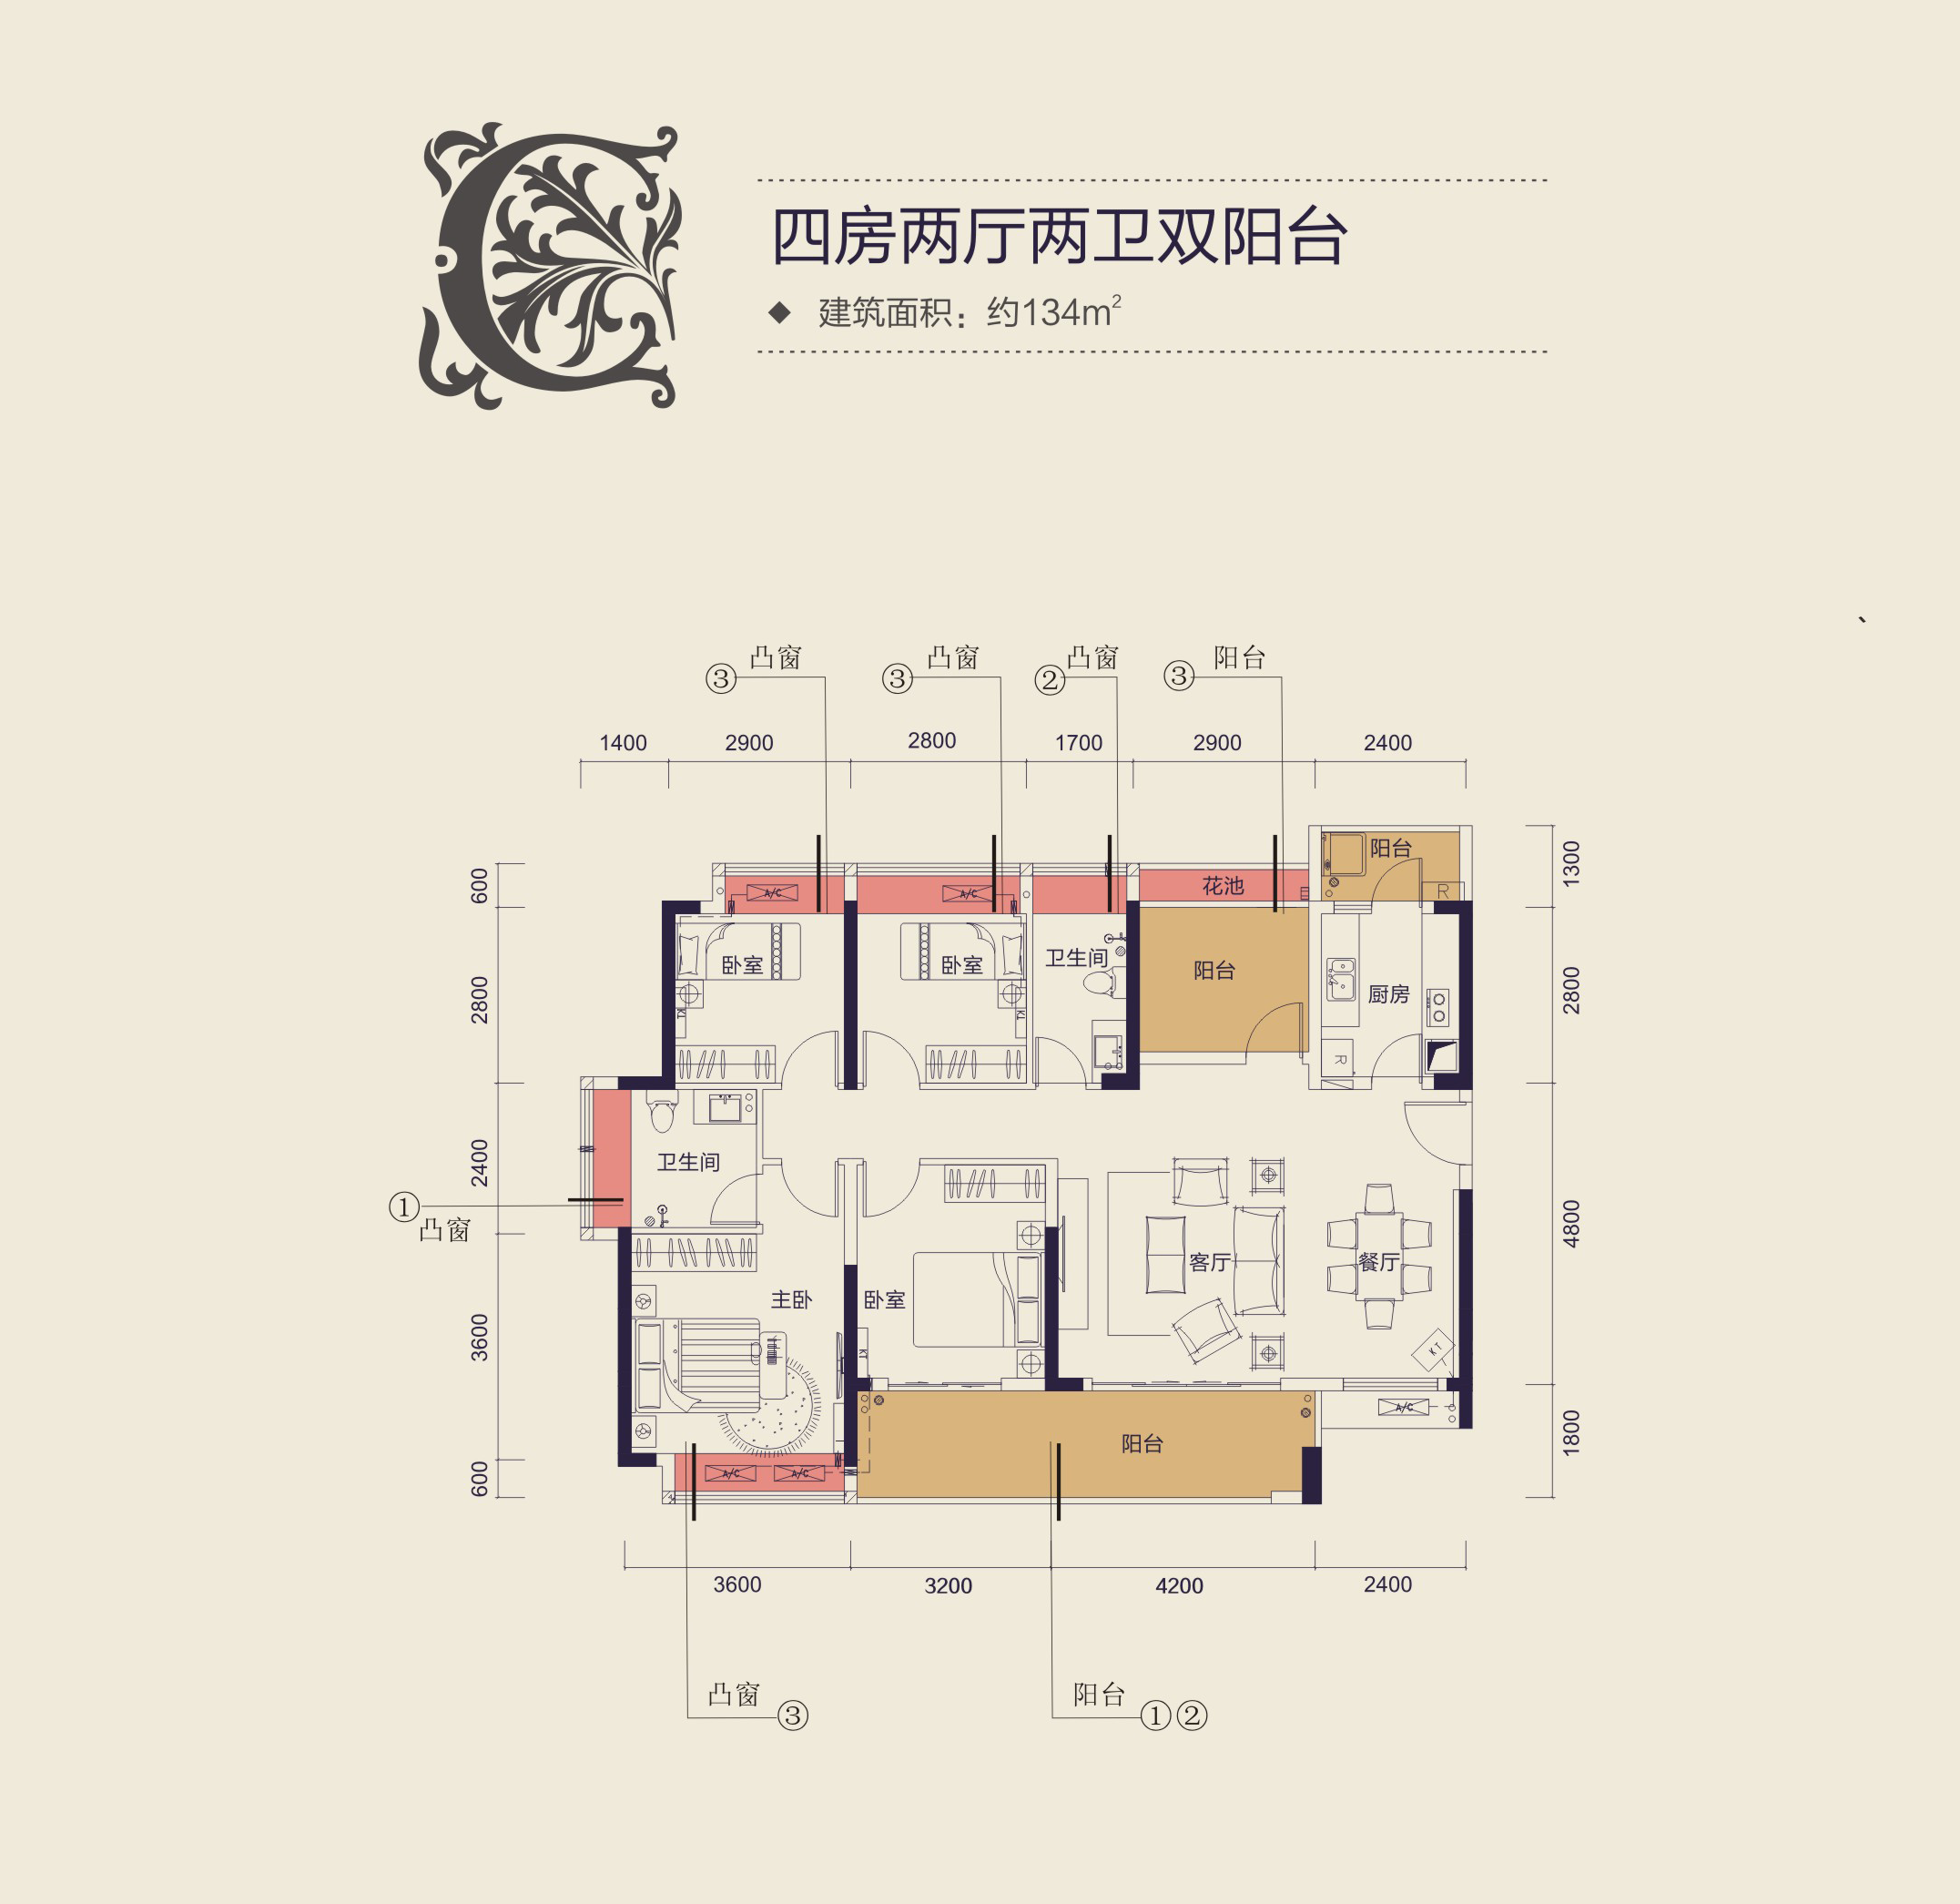 逸尚东方·设计机构--惠州中洲天御E-1样板房-室内设计师平台 -室内设计论坛-扮家家室内设计网